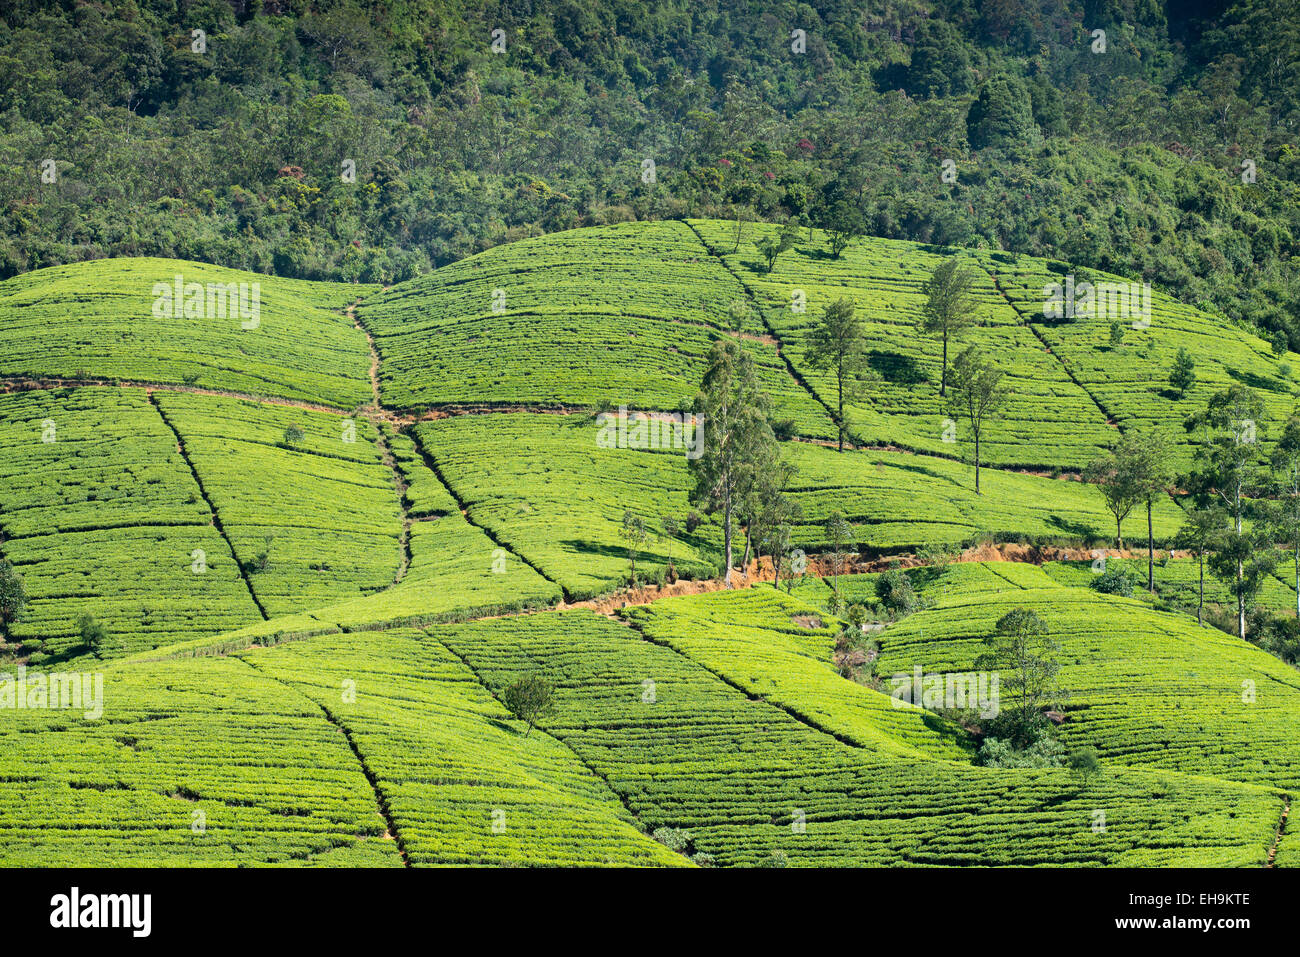 La plantation de thé sur la colline, le Sri Lanka, l'Asie Banque D'Images